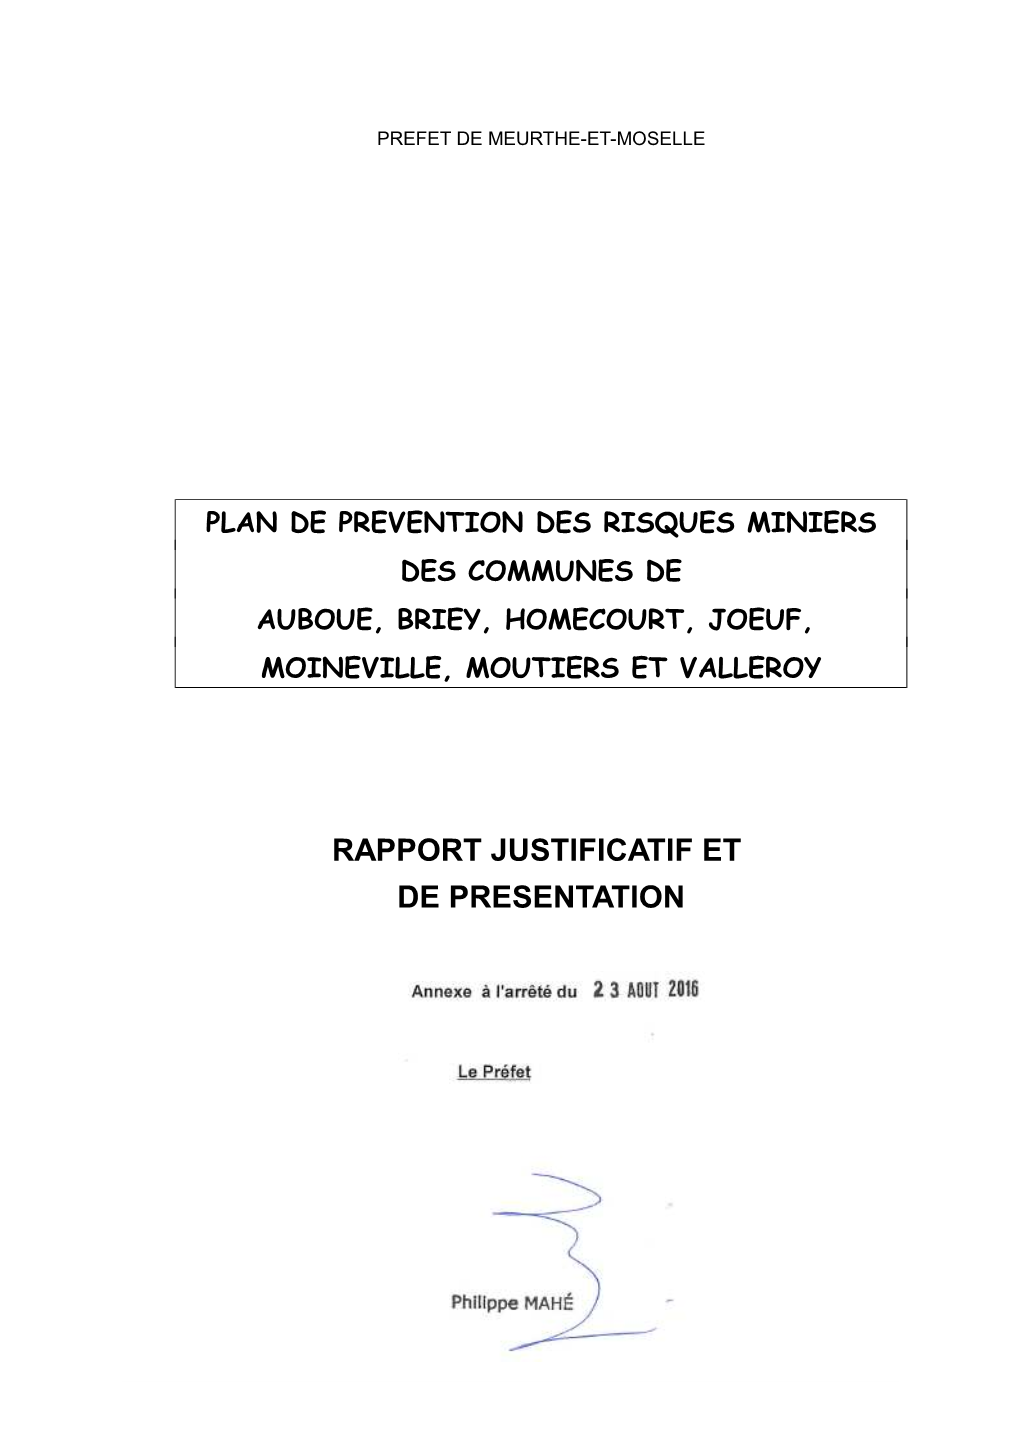 RAPPORT JUSTIFICATIF ET DE PRESENTATION Rapport Présent